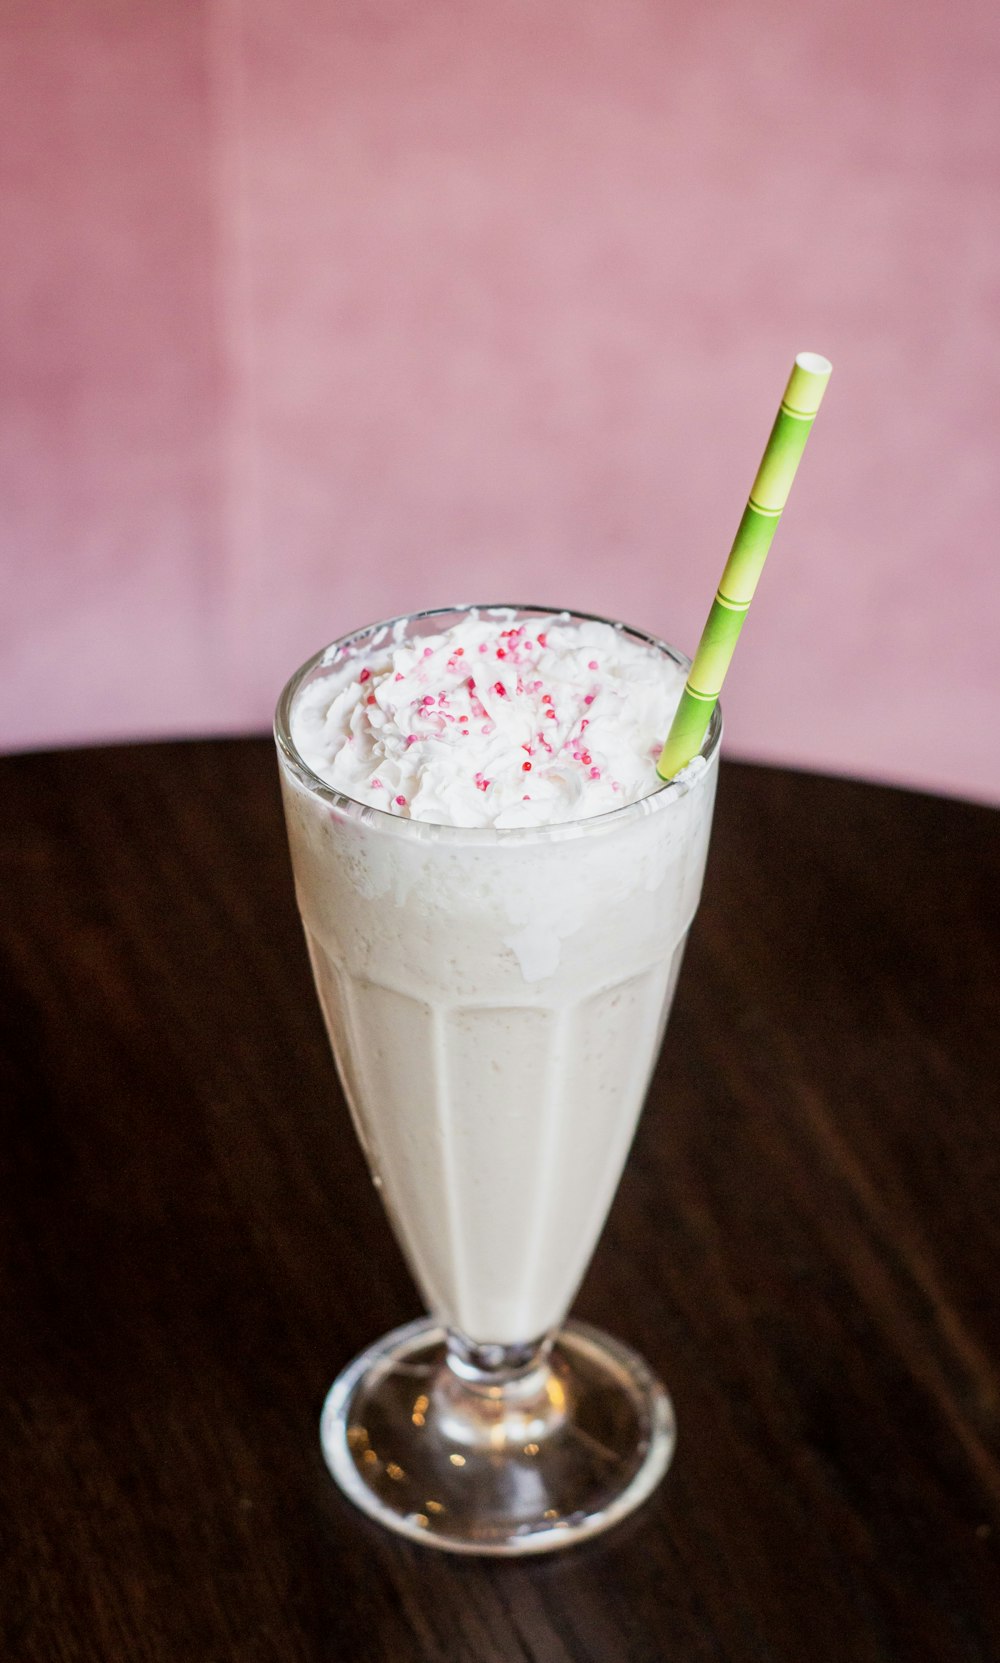 Milkshake in a glass